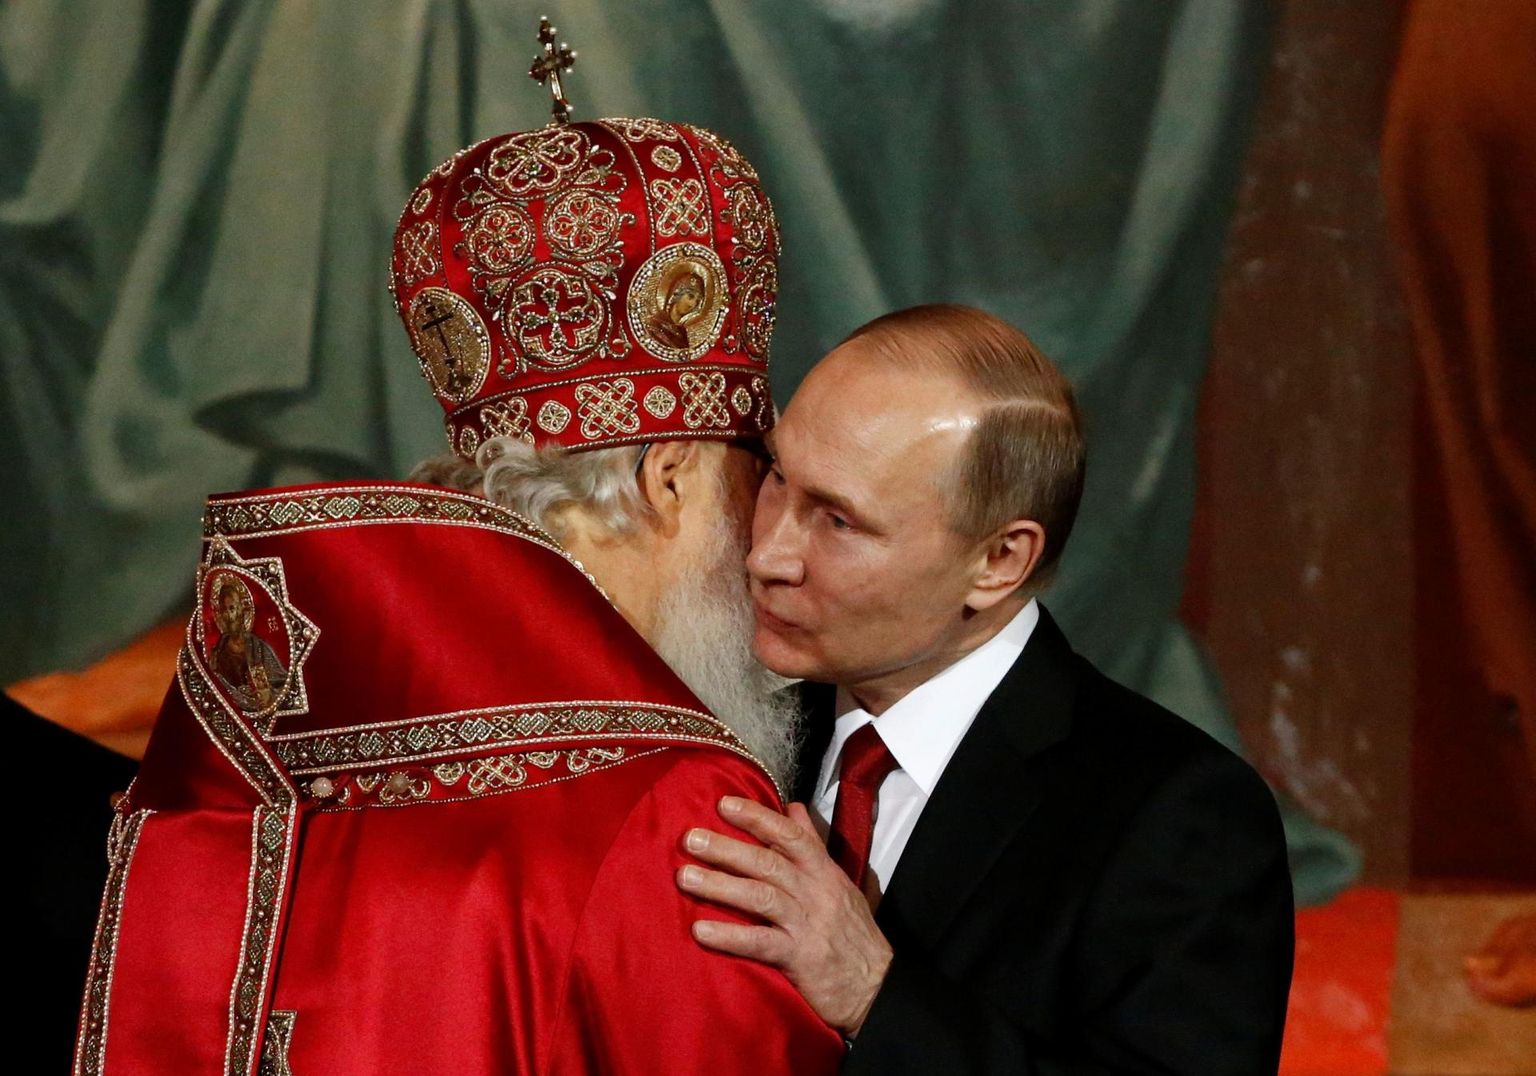 Vene õigeusu kirik on kui hübriidsõja üks väeosa, ütleb Eidman. Pildil embab Vladimir Putin Venemaa õigeusukiriku pead patriarh Kirilli.  